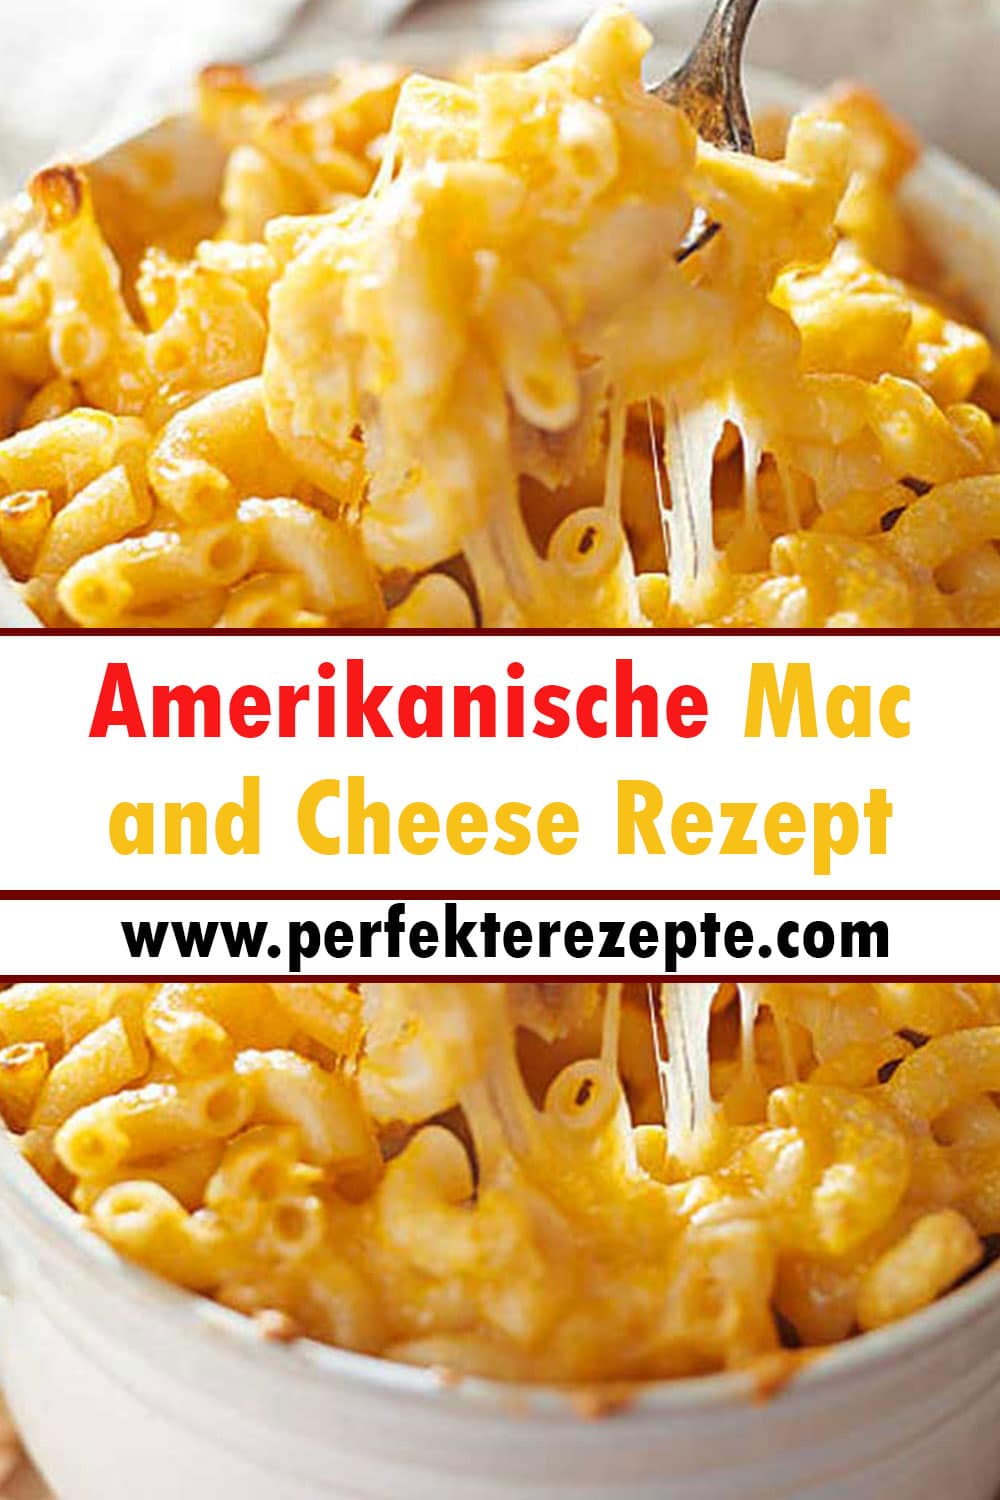 Amerikanische Mac and Cheese Rezept